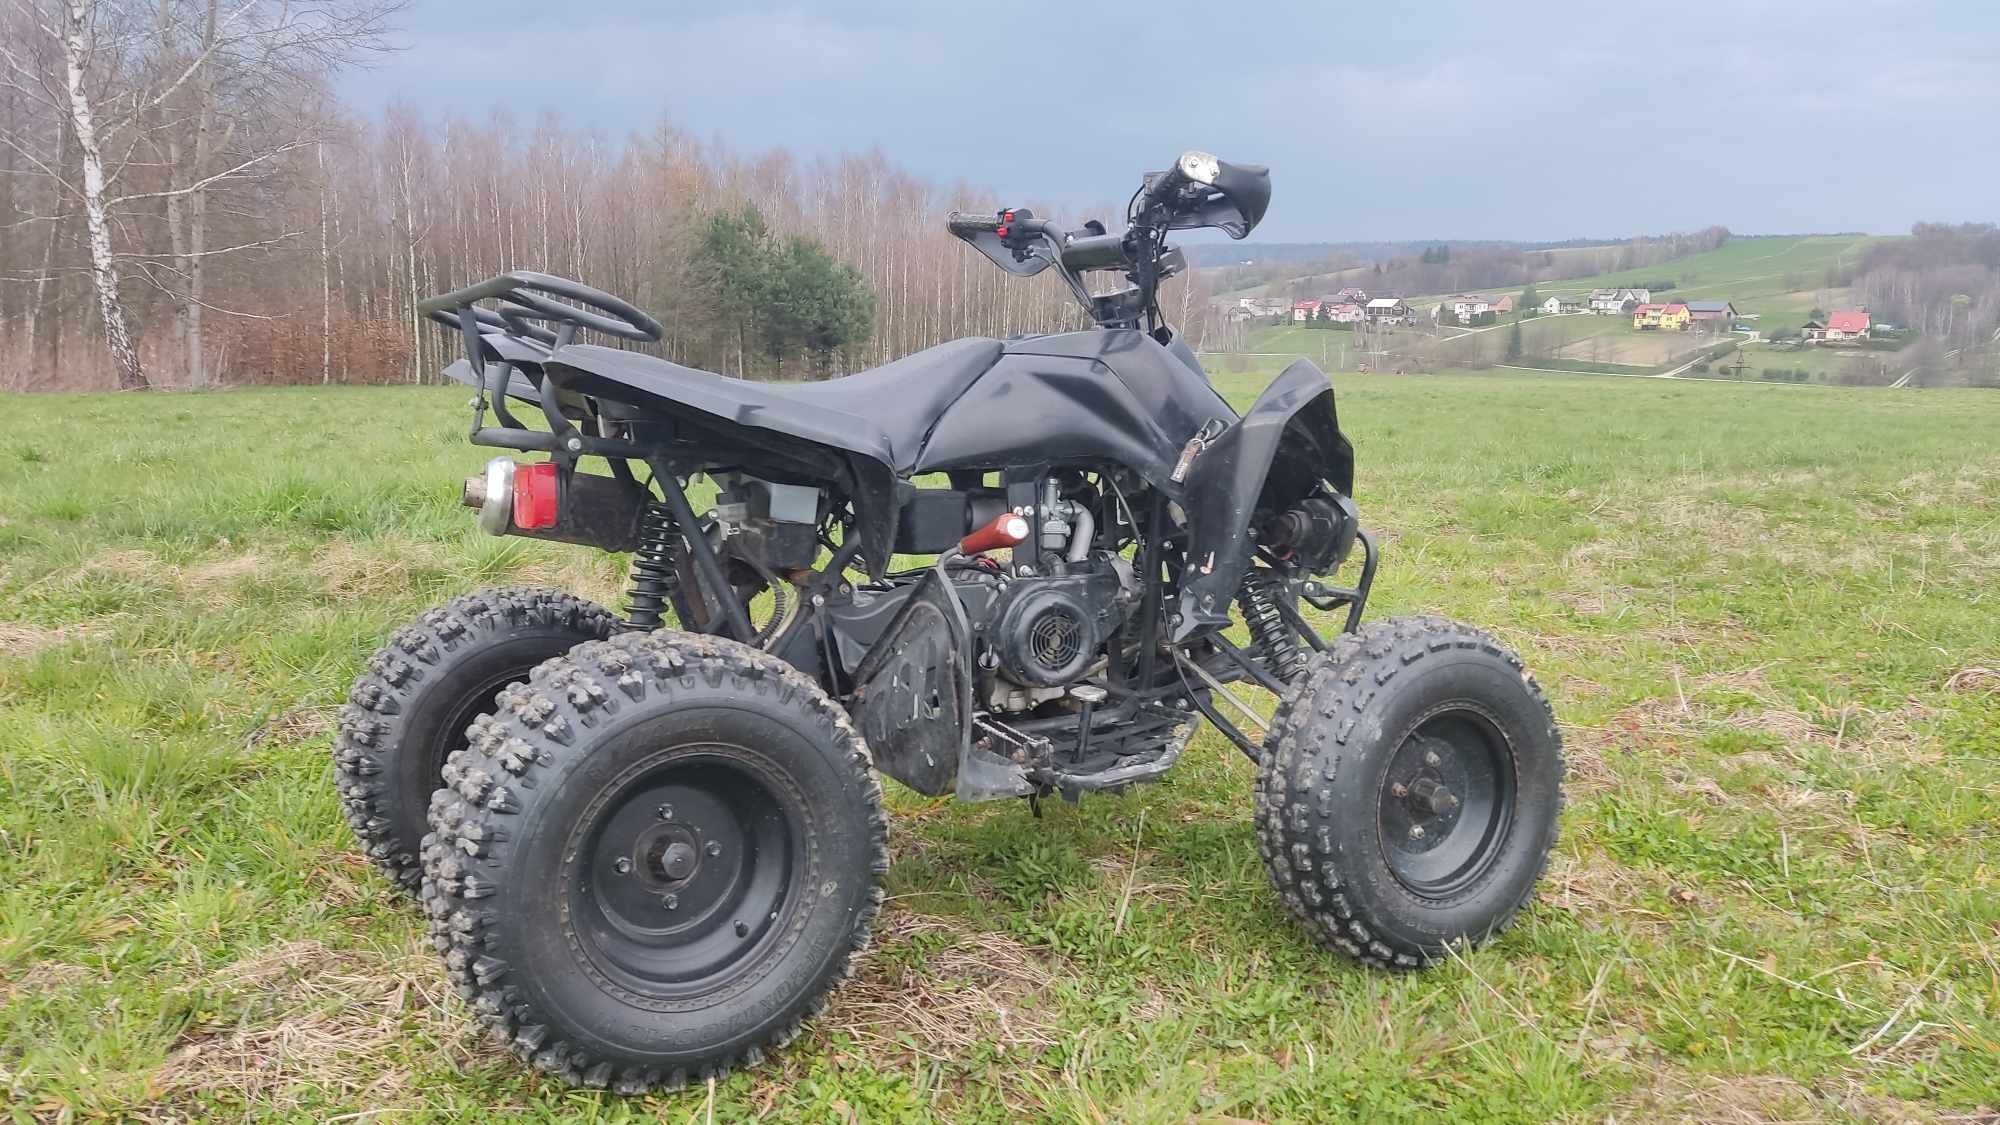 Quad ATV150-G bdb